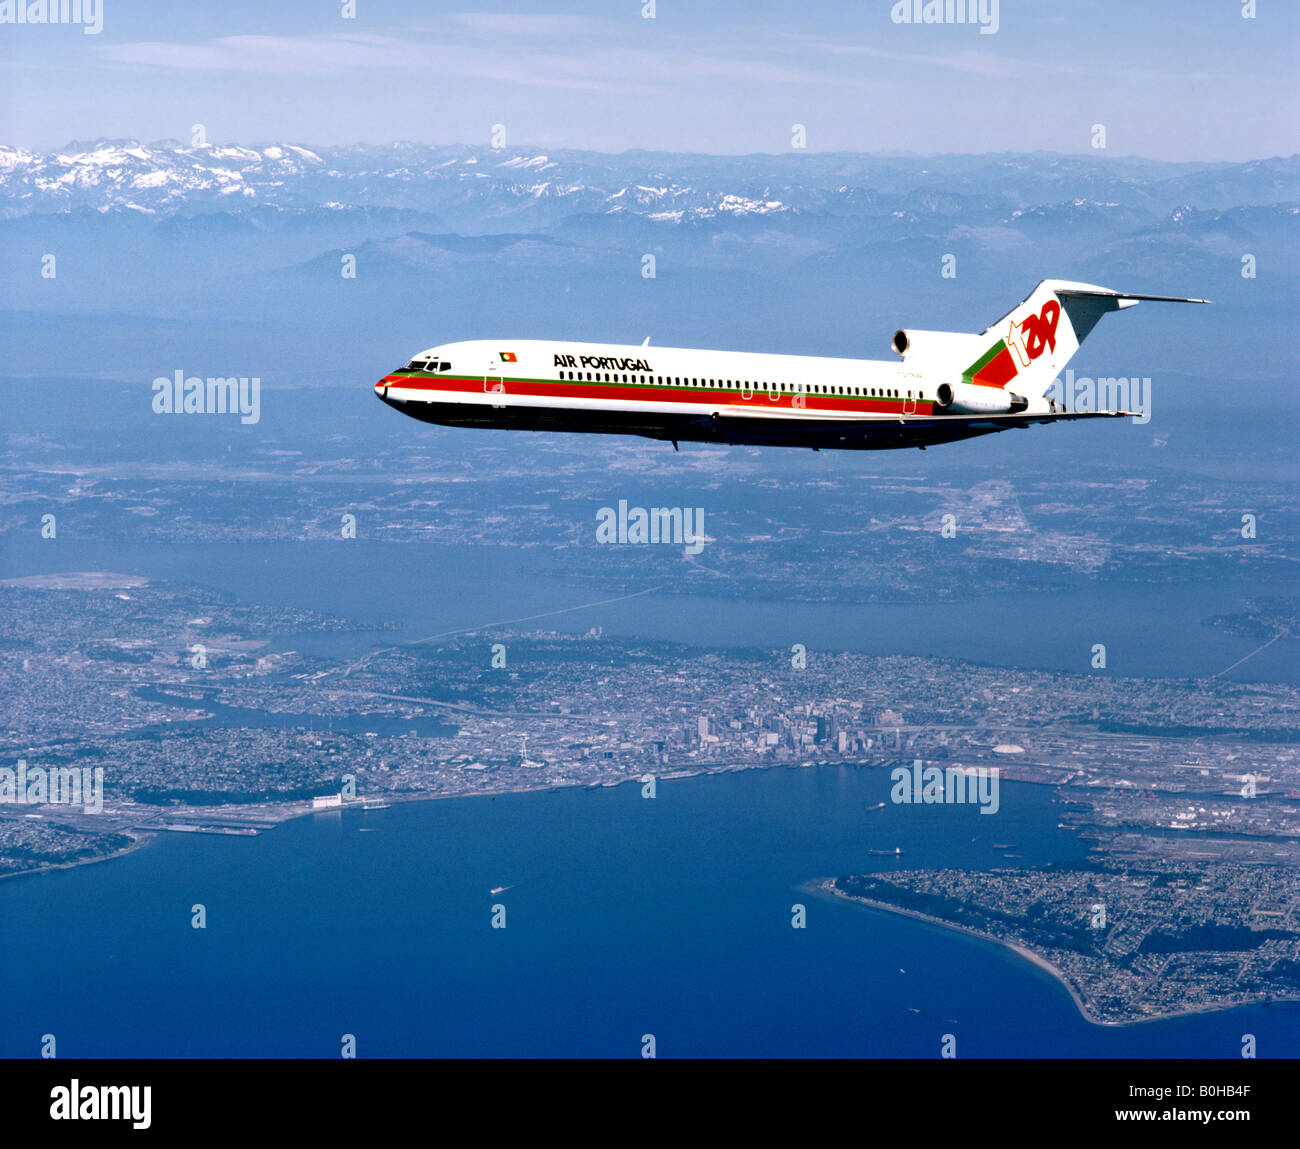 Aria Portogallo, Boeing 727, il traffico della compagnia aerea, vista aerea, Seattle, Washington, Stati Uniti d'America Foto Stock